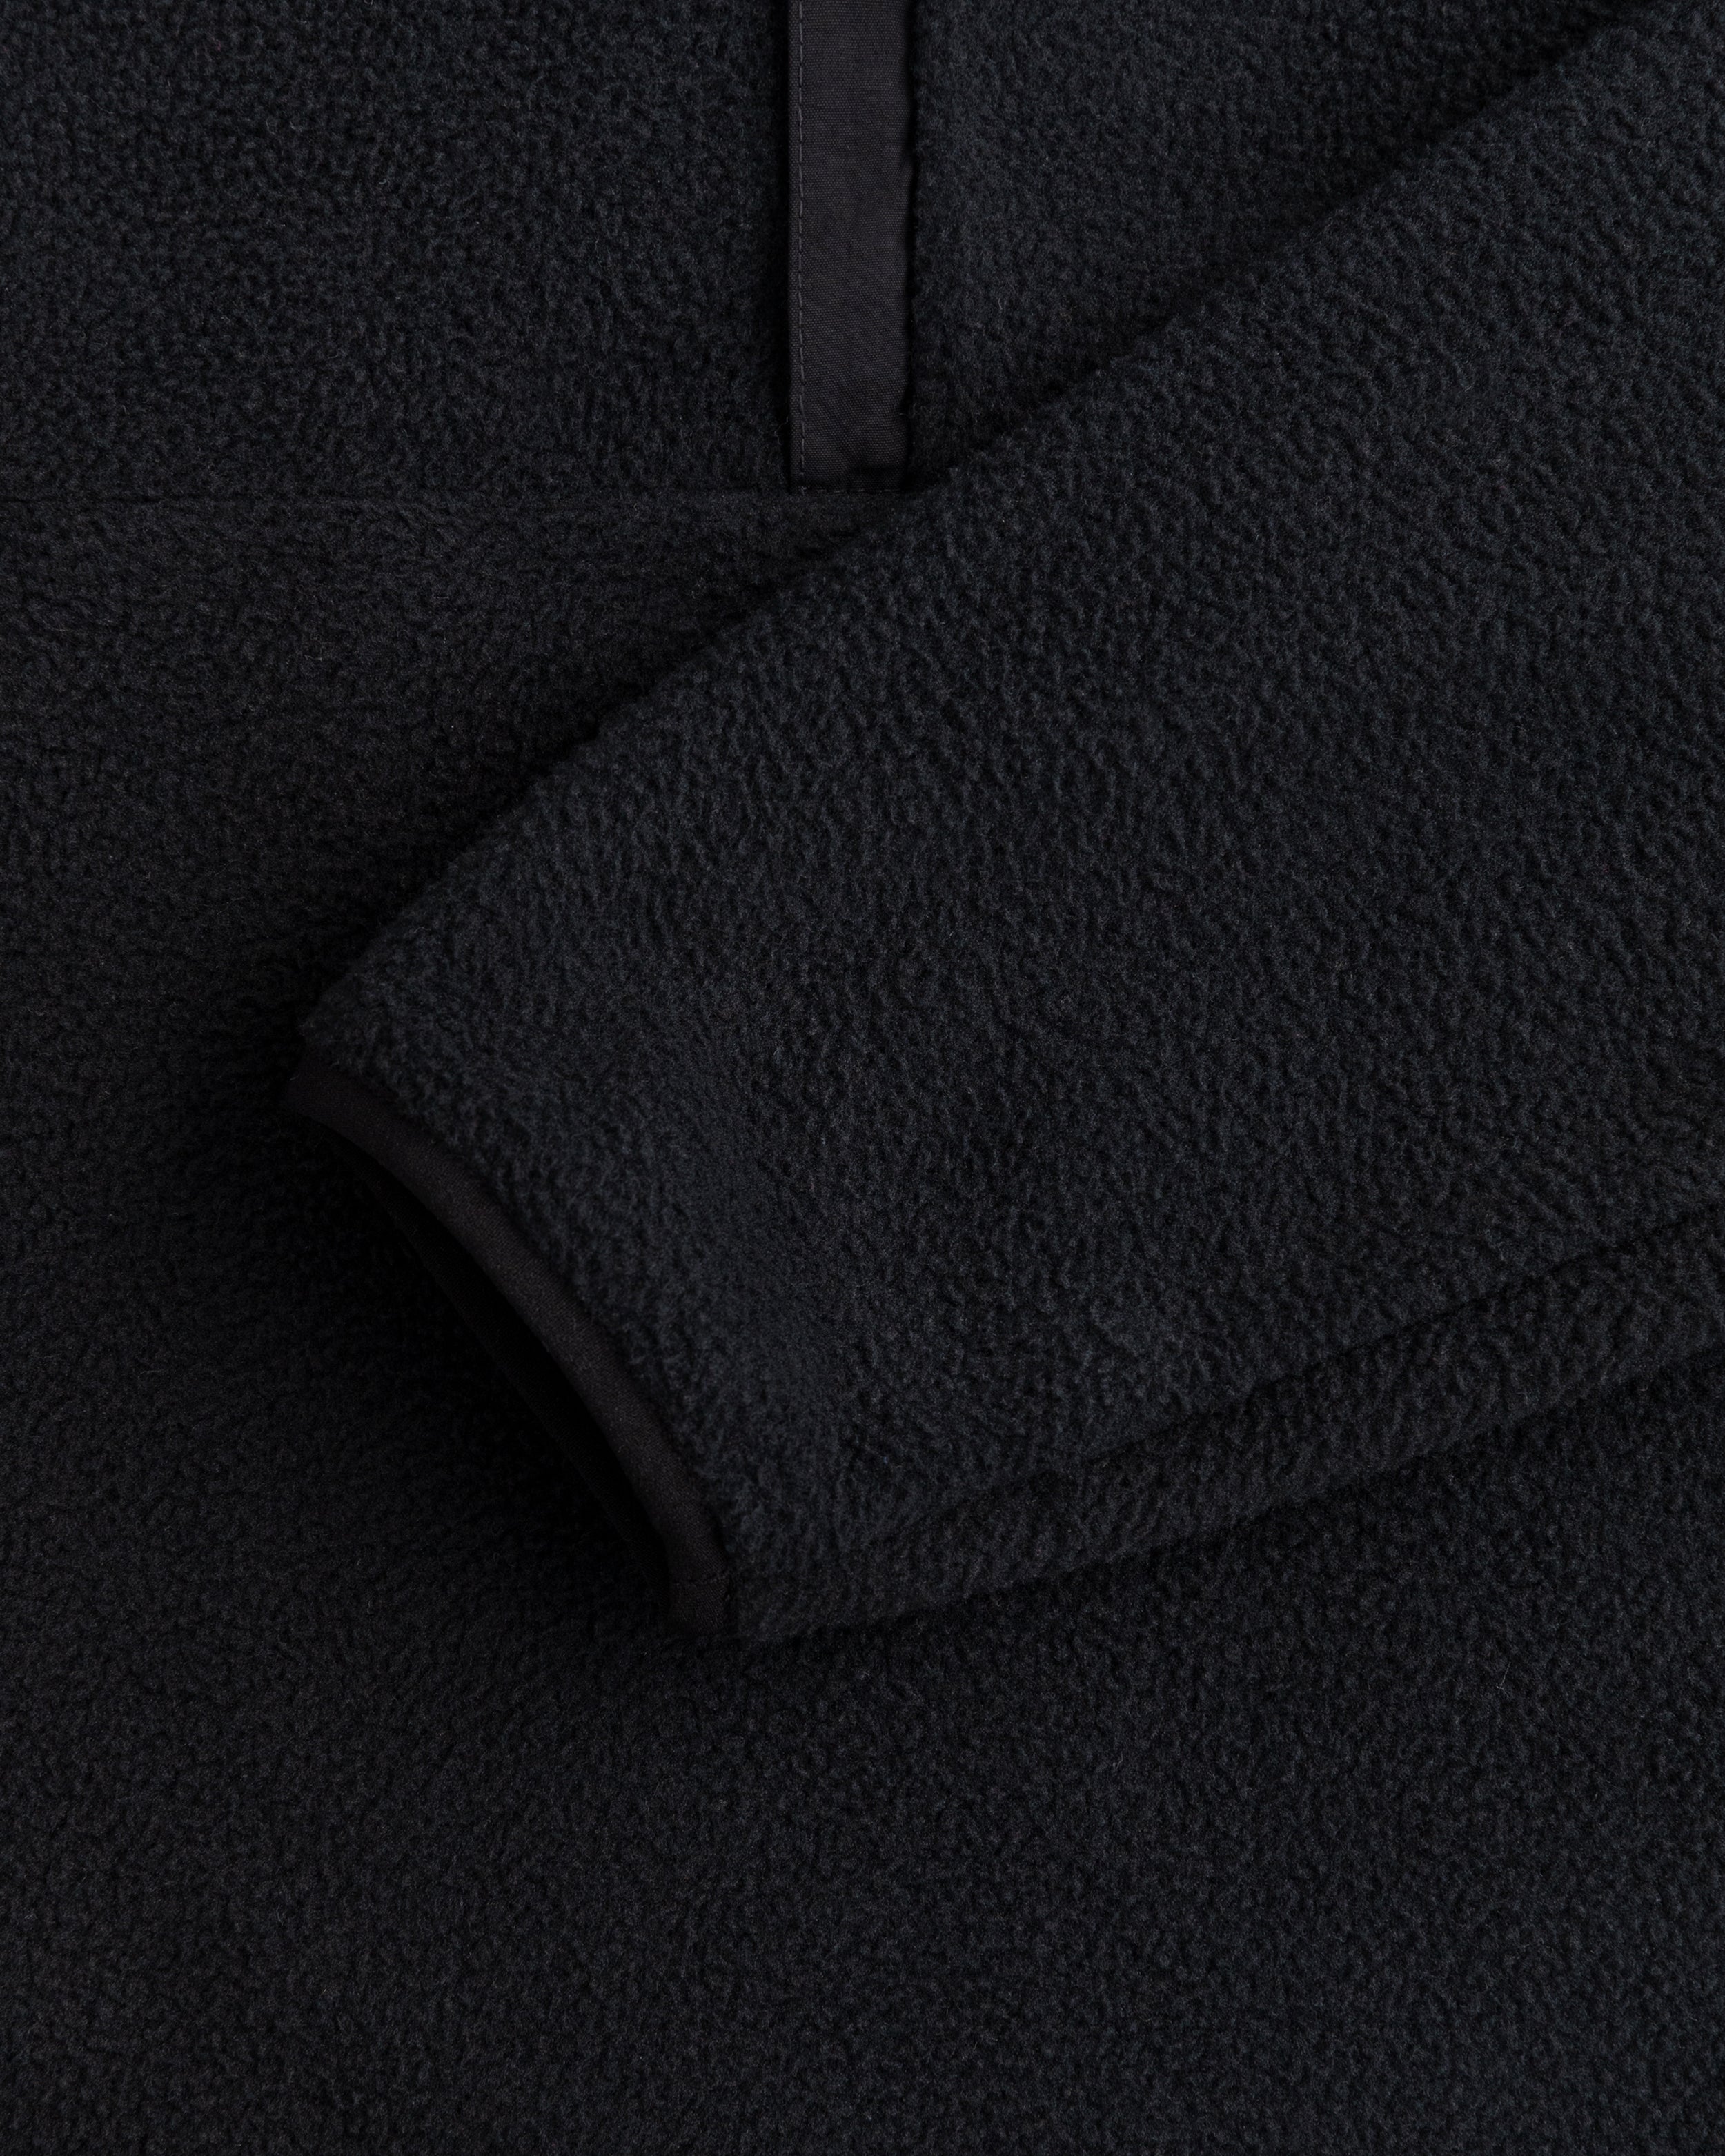 Aimé Leon Dore Unisphere Full-Zip Fleece Jacket